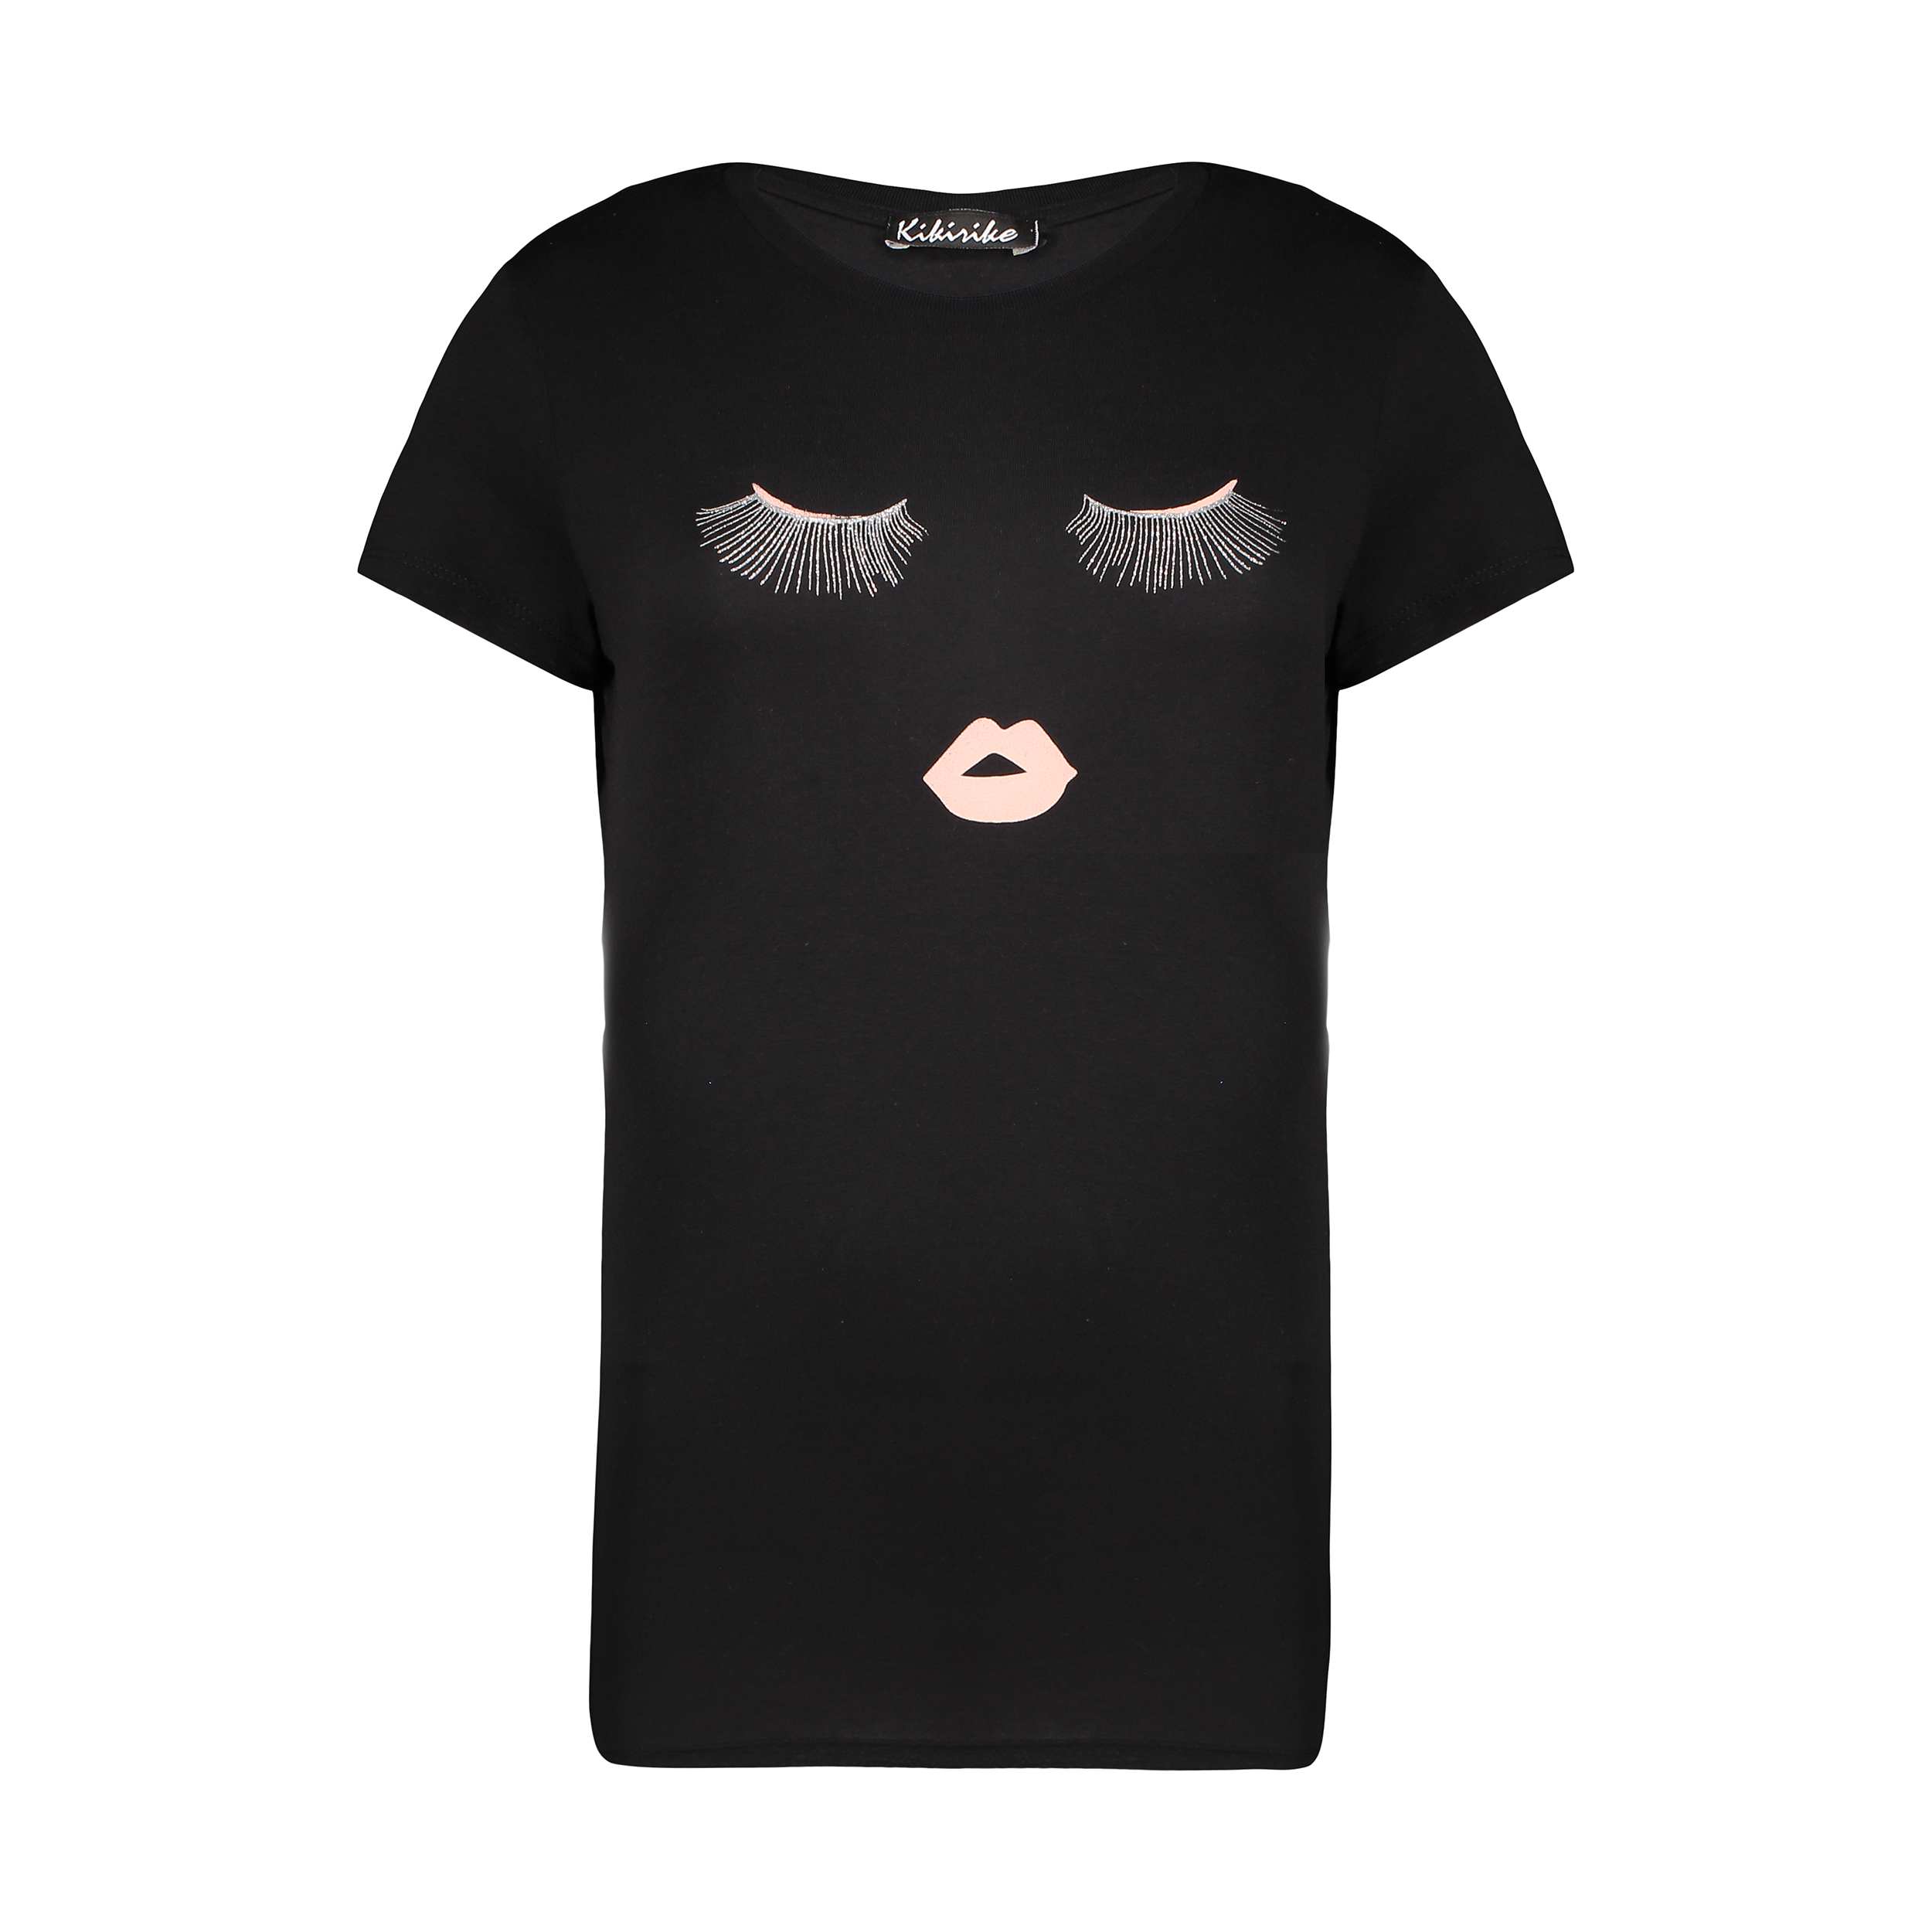 تی شرت زنانه کیکی رایکی مدل BB02930-001 -  - 1